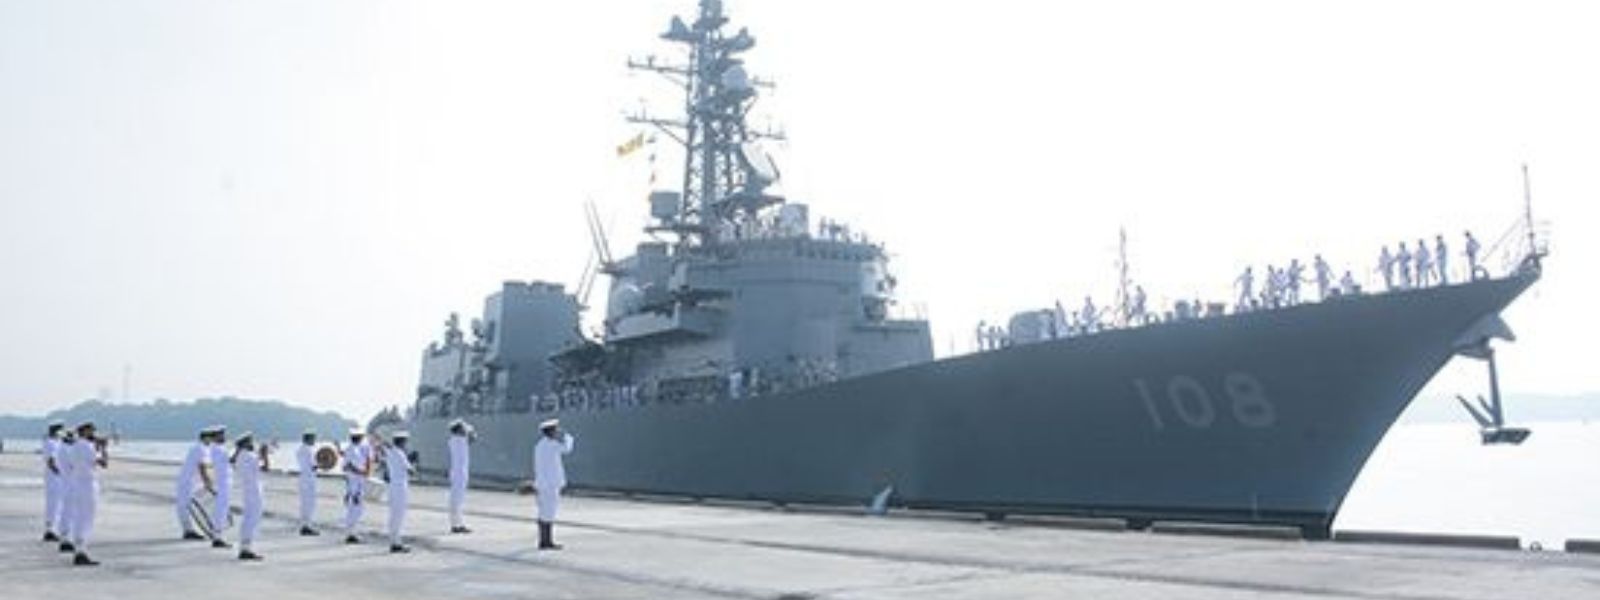 JMSDF destroyer arrives at Trincomalee Harbour